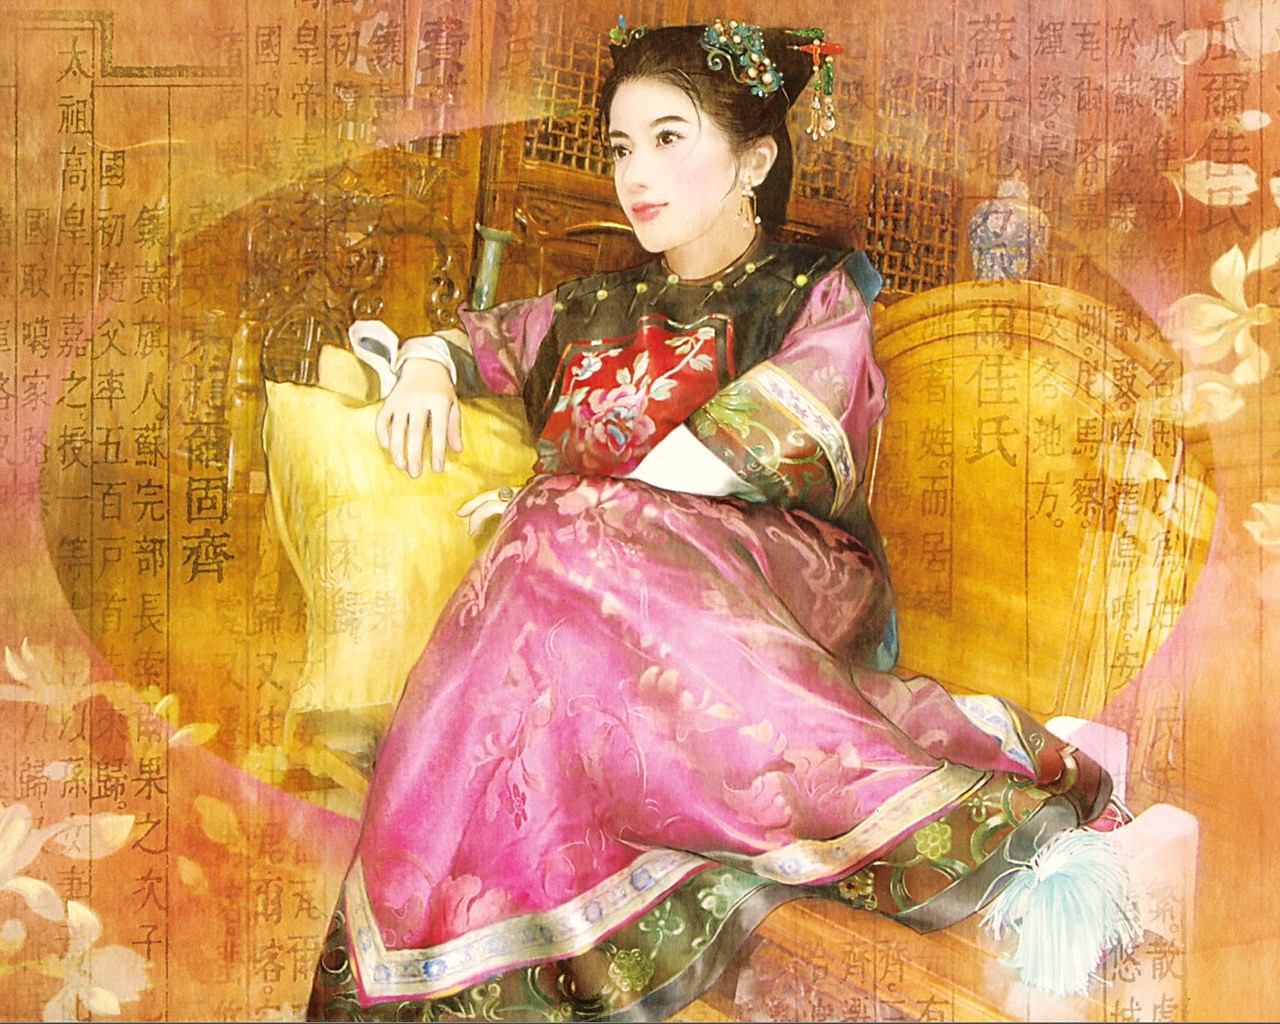 Las mujeres de Pintura Antigua de Escritorio #4 - 1280x1024